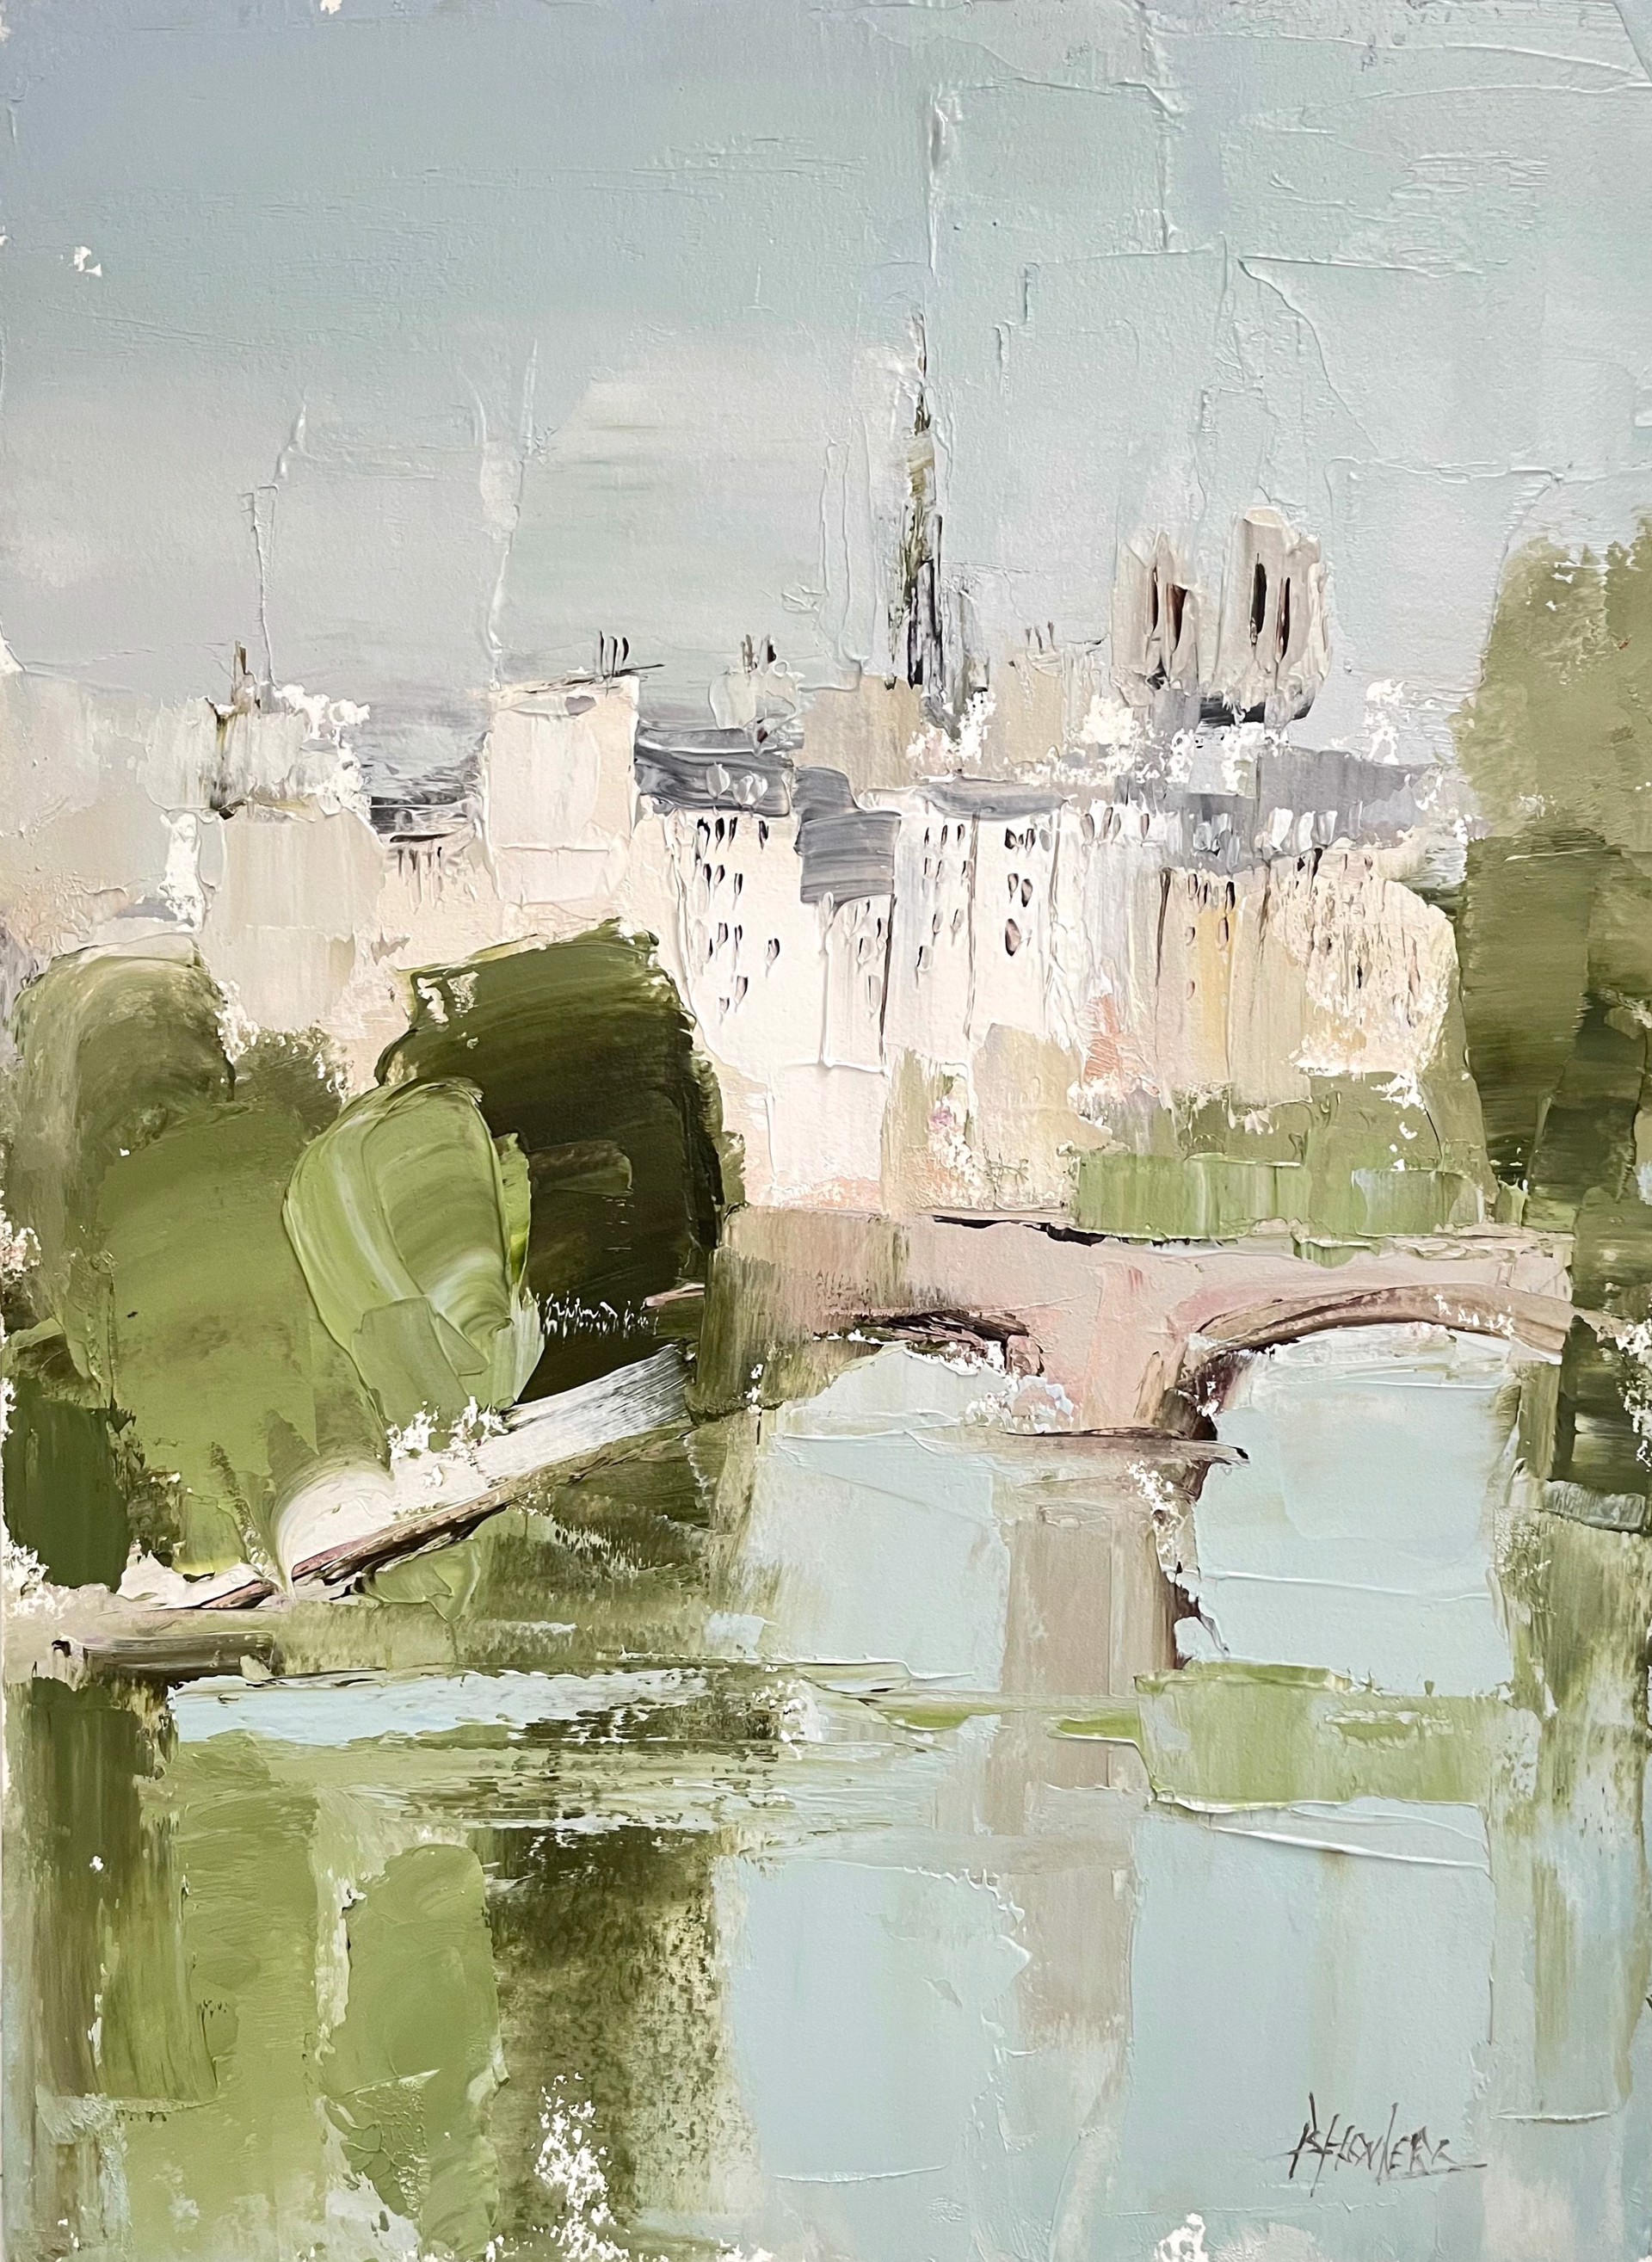 Seine Paris, Still Waters  by Barbara Flowers